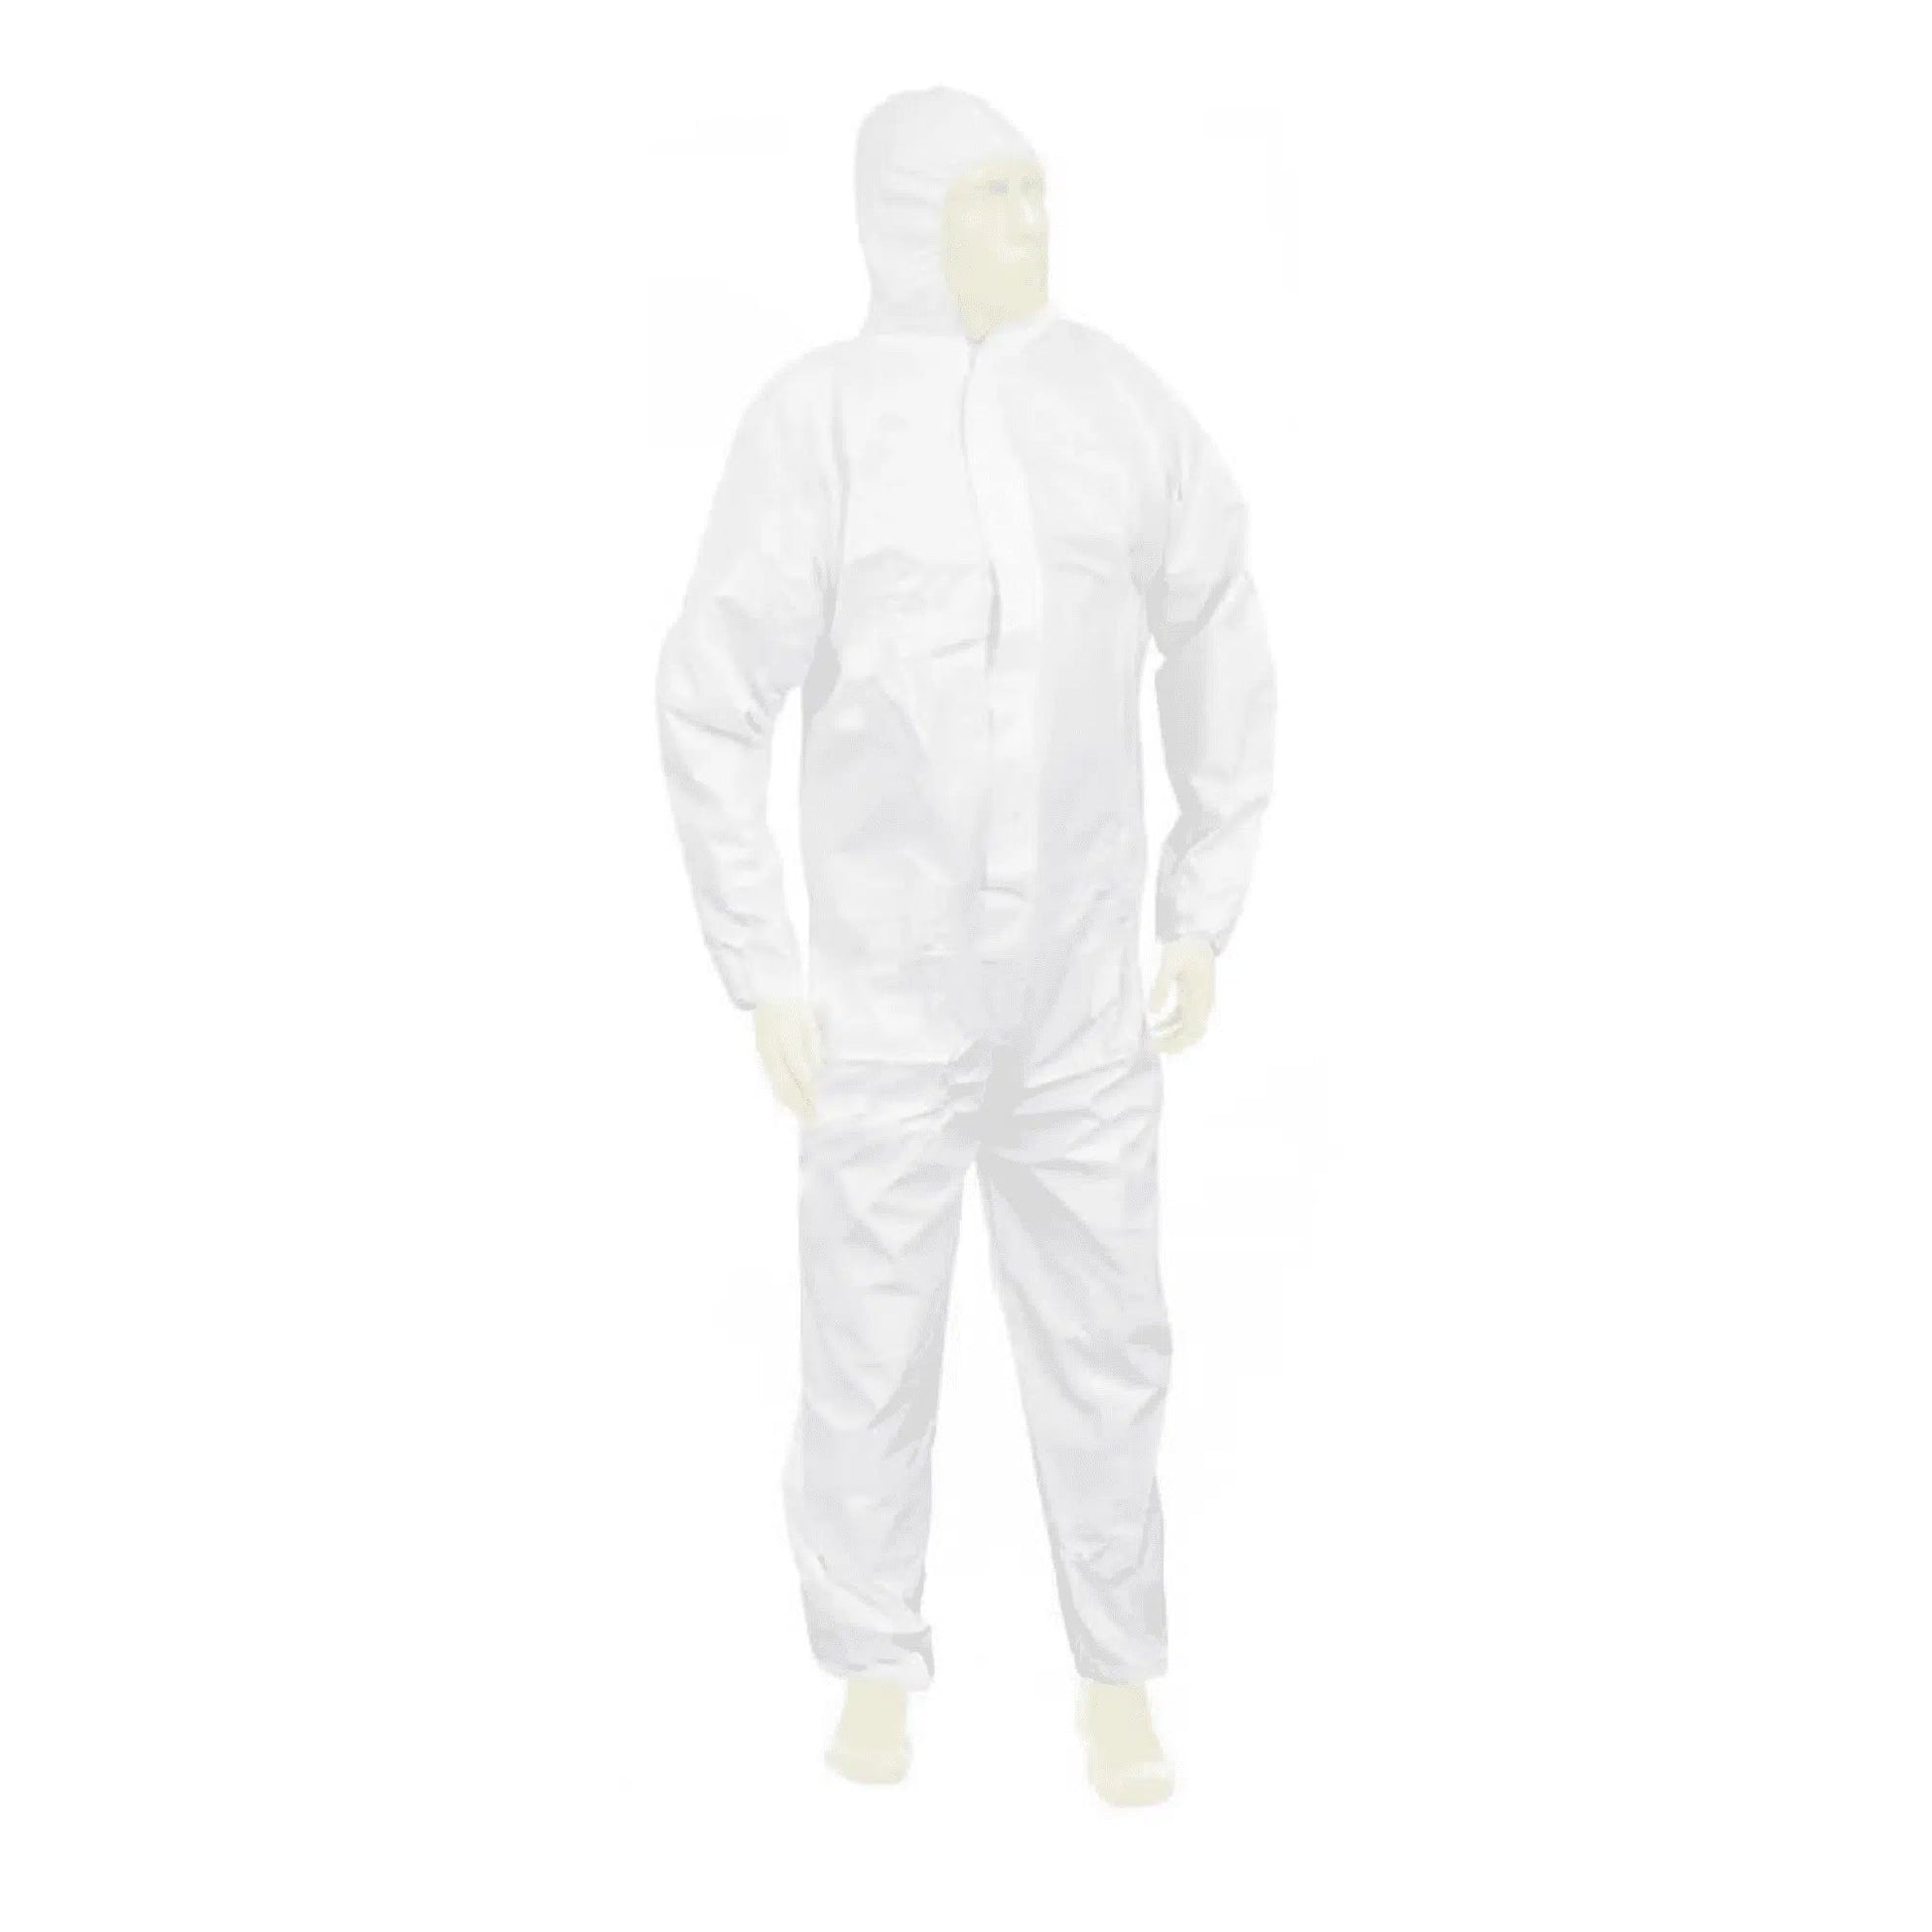 Eine Person trägt einen weißen Meditrade Suavel® Yeti Schutzanzug mit Kapuze, der den Körper vollständig bedeckt, und steht vor einem weißen Hintergrund. Der Anzug wirkt leicht und auf Sicherheit ausgelegt.